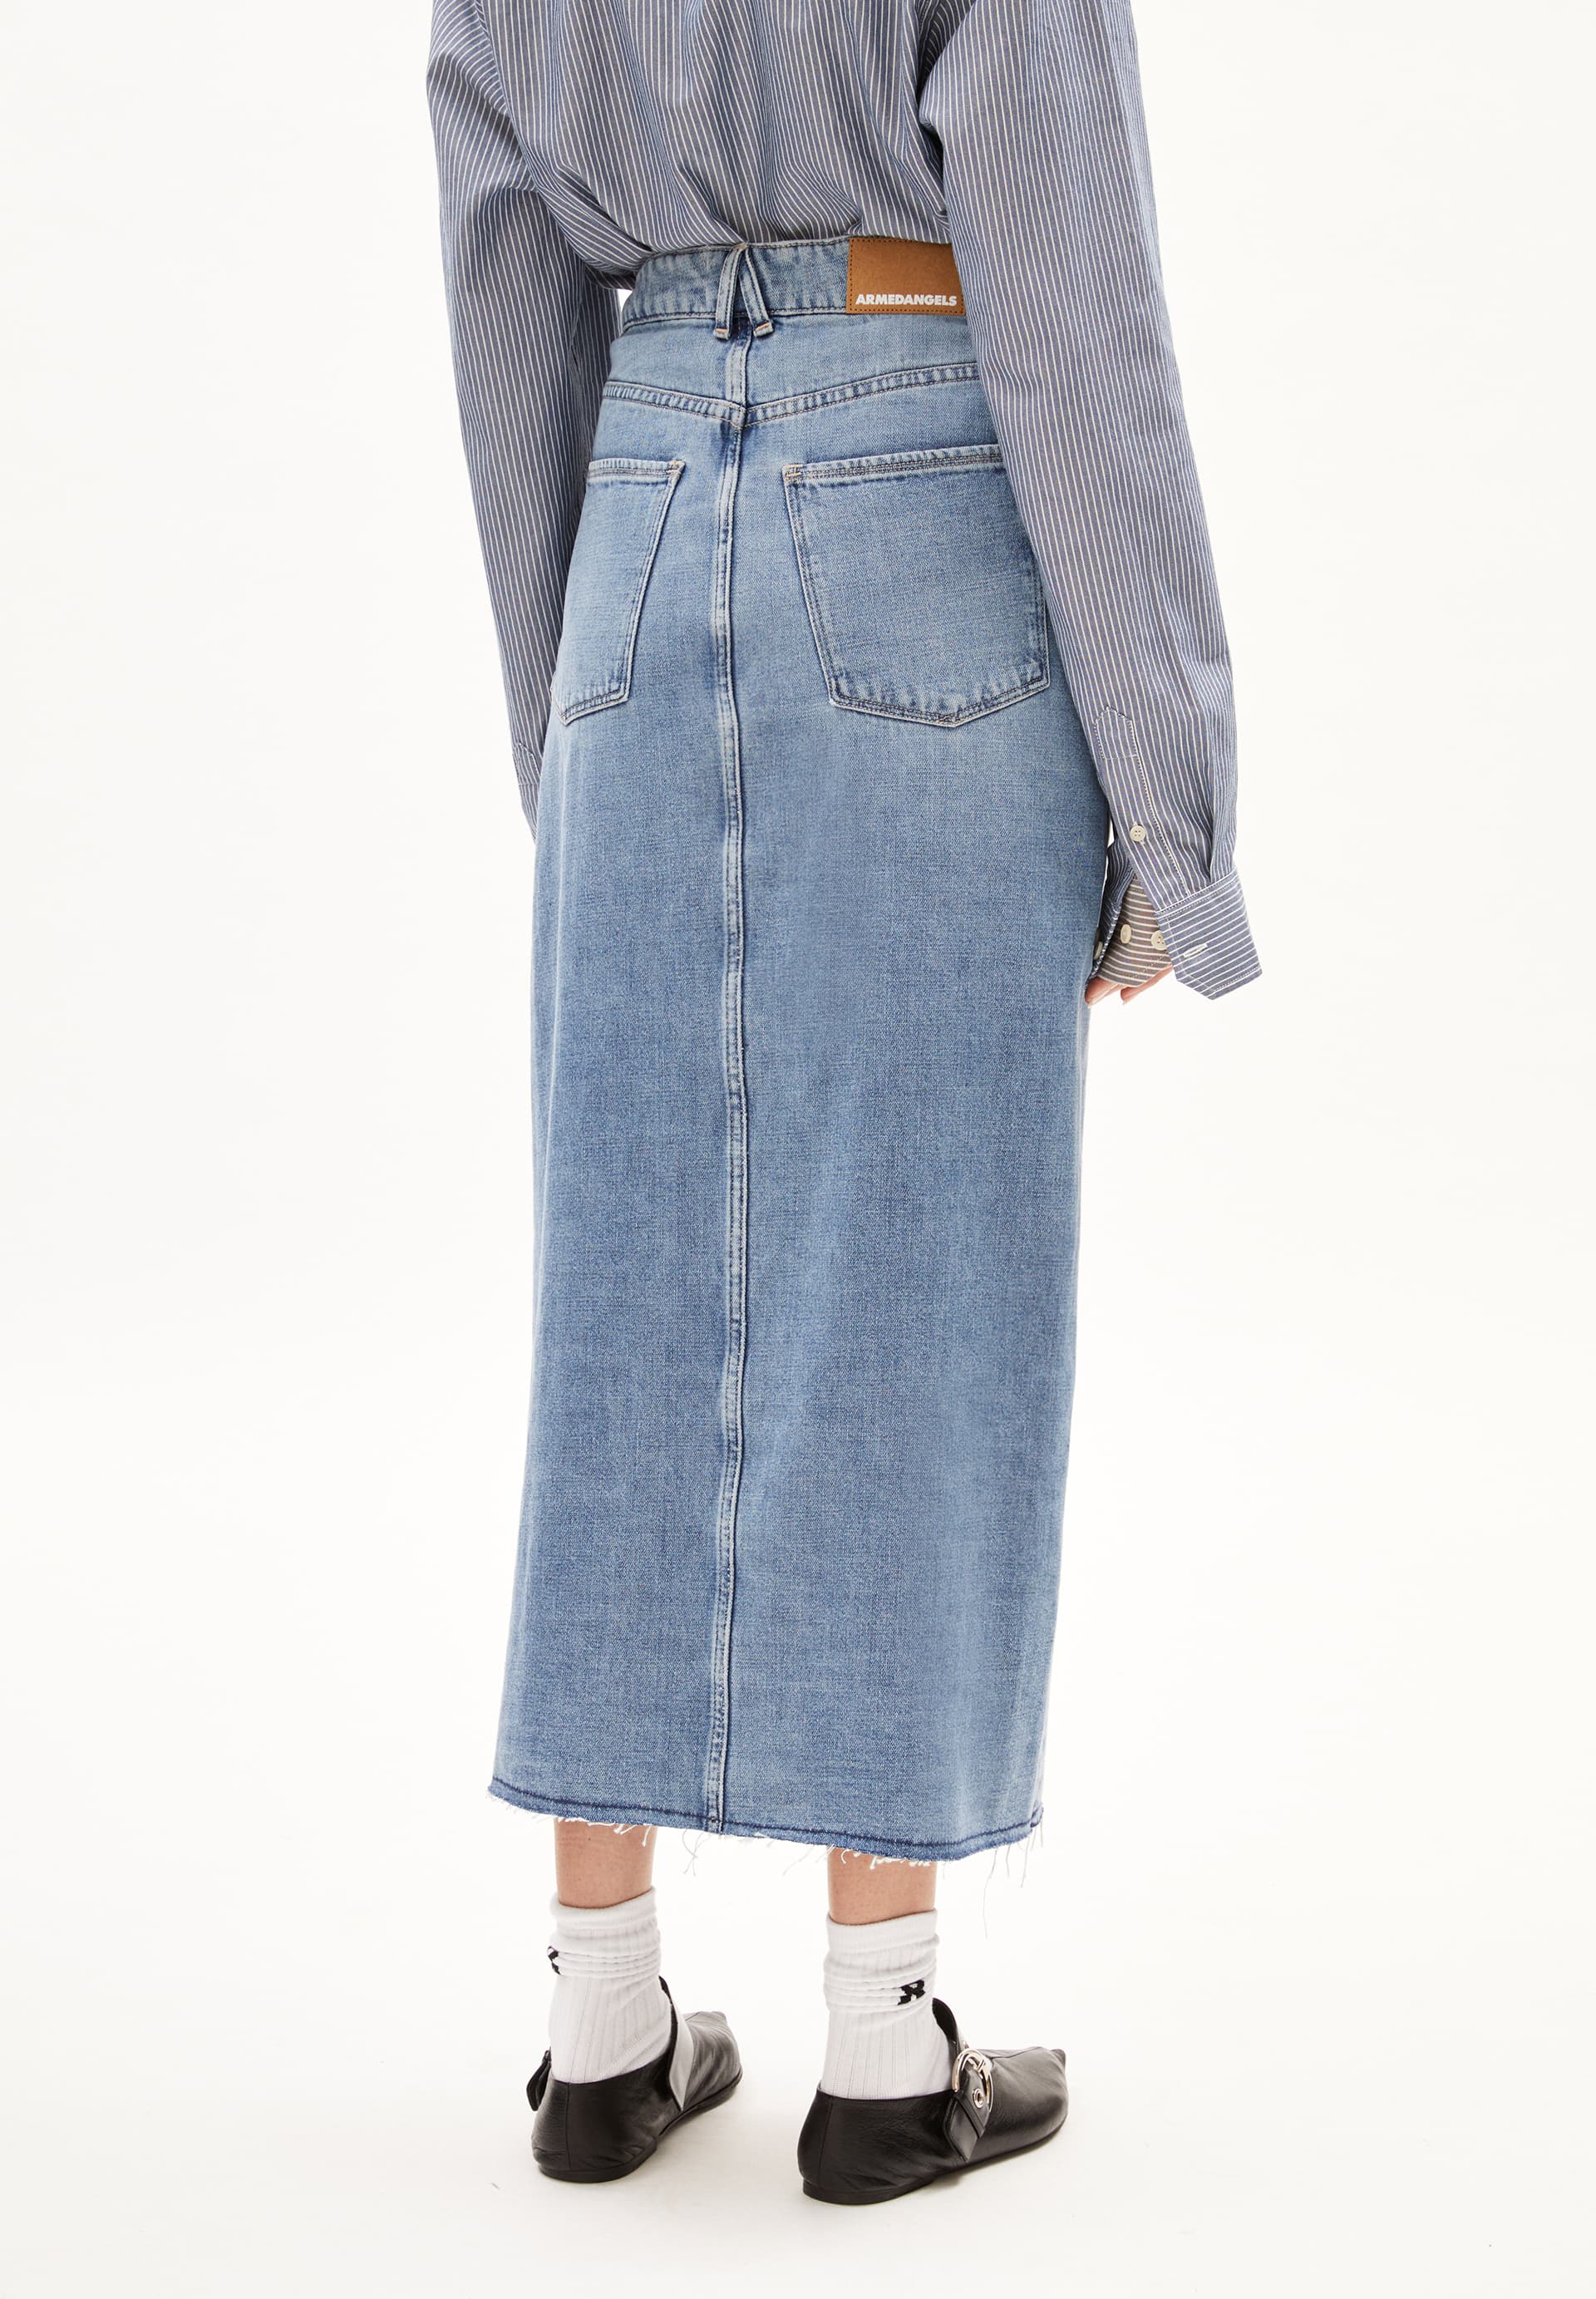 KITAARI DEMI Denim Skirt Slim Fit made of Organic Cotton